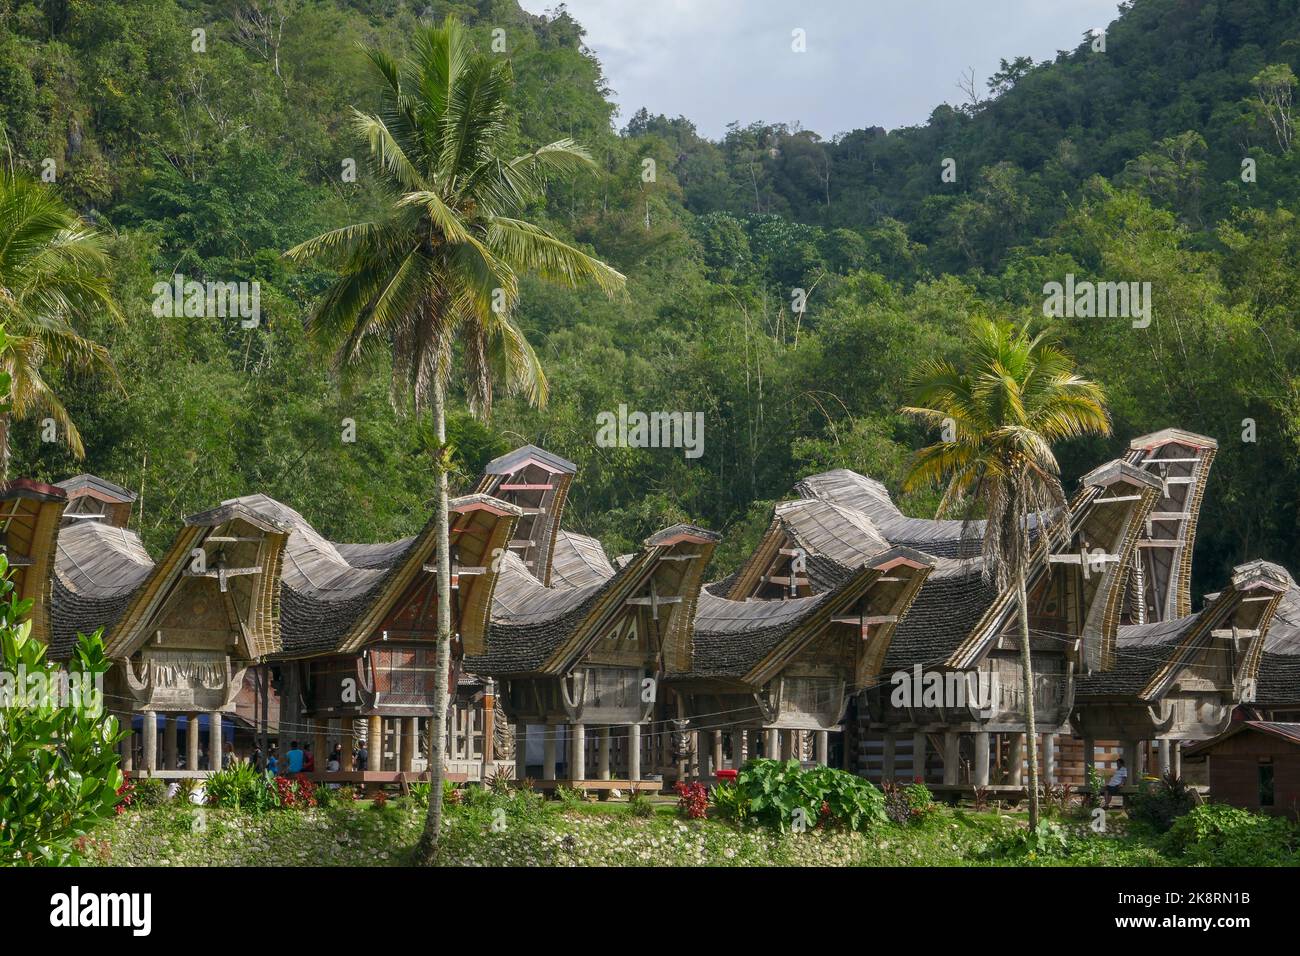 Landschaftlich reizvolle Aussicht auf das Dorf Kete Kesu mit einer Gruppe von Tongkonan- oder traditionellen Häusern, in der Nähe von Rantepao, Tana Toraja, Sulawesi, Indonesien Stockfoto